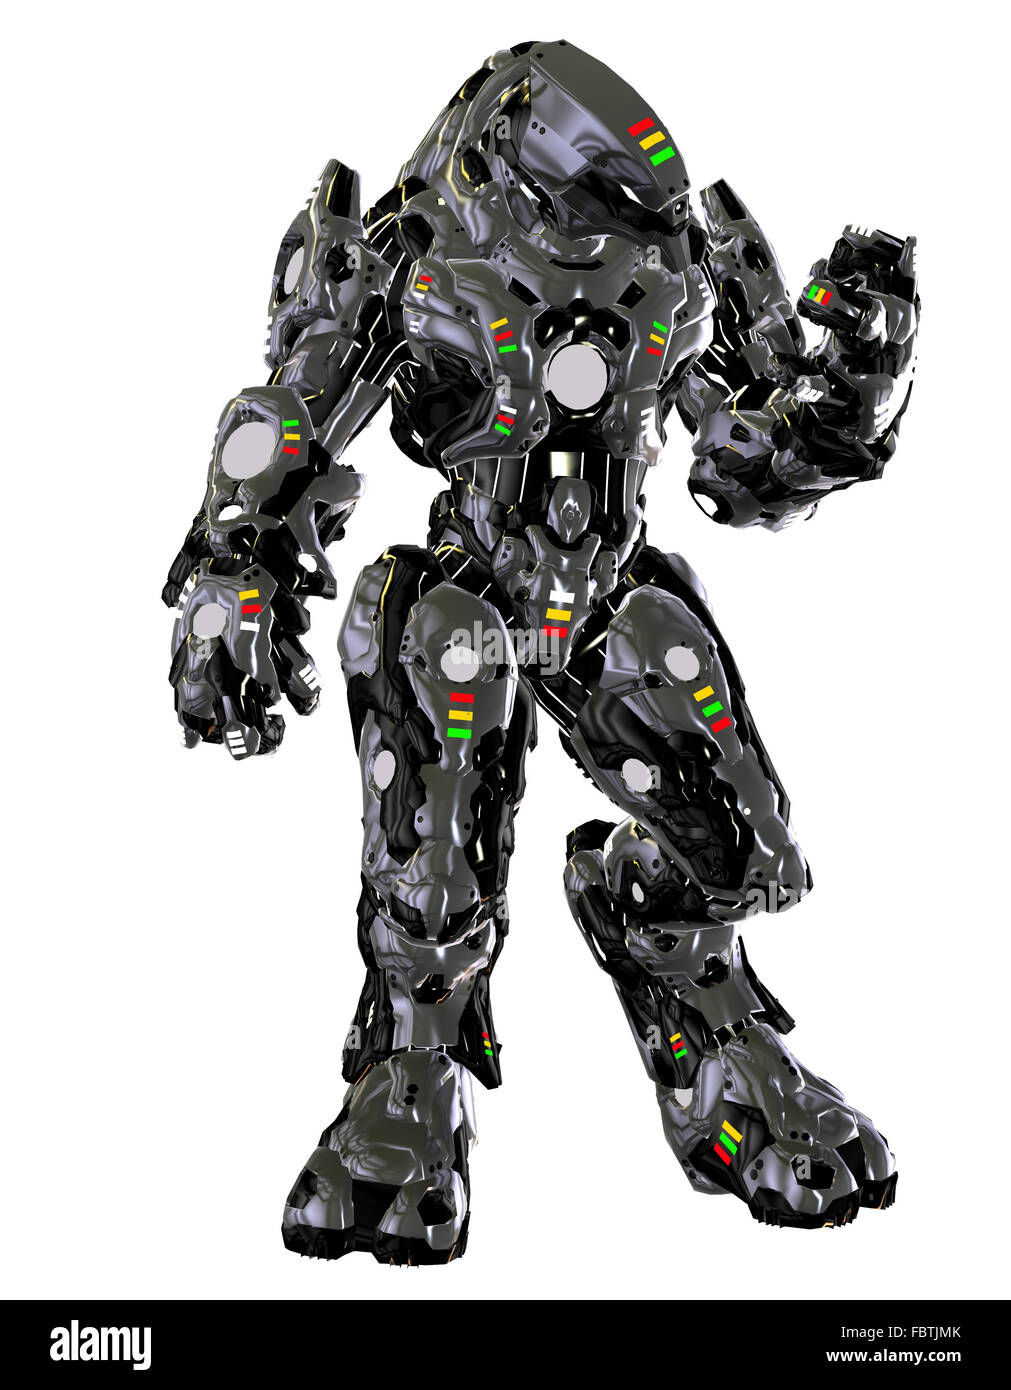 Combat robot Banque d'images détourées - Alamy